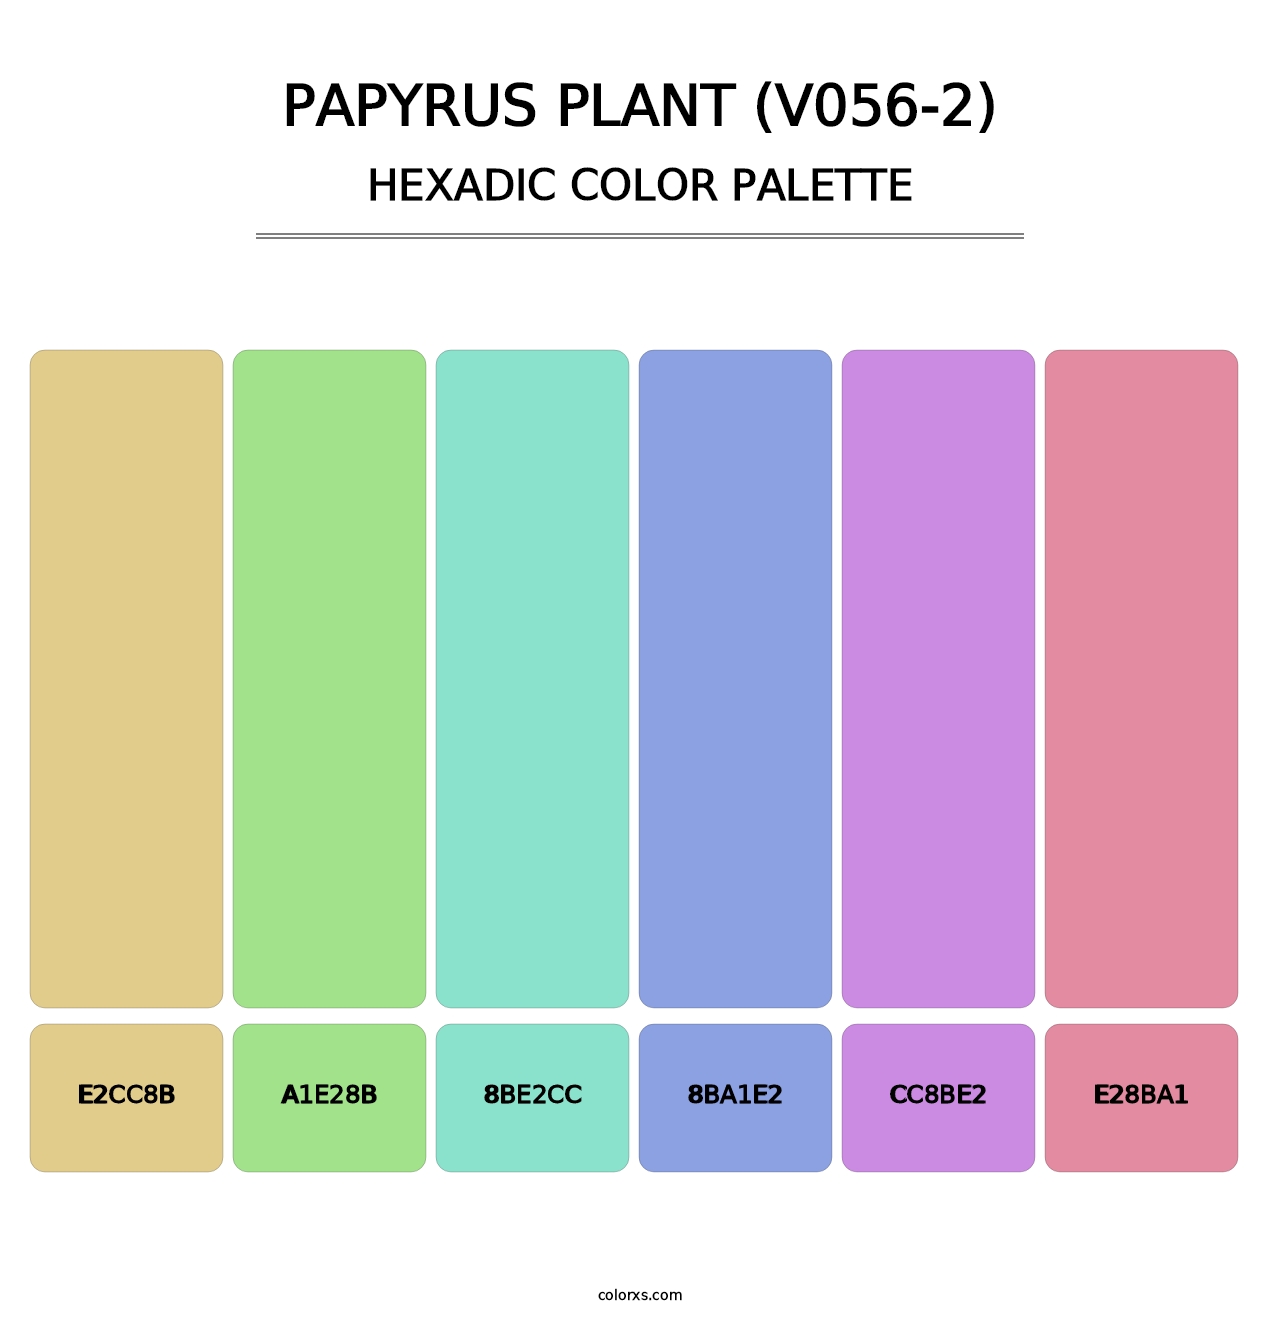 Papyrus Plant (V056-2) - Hexadic Color Palette